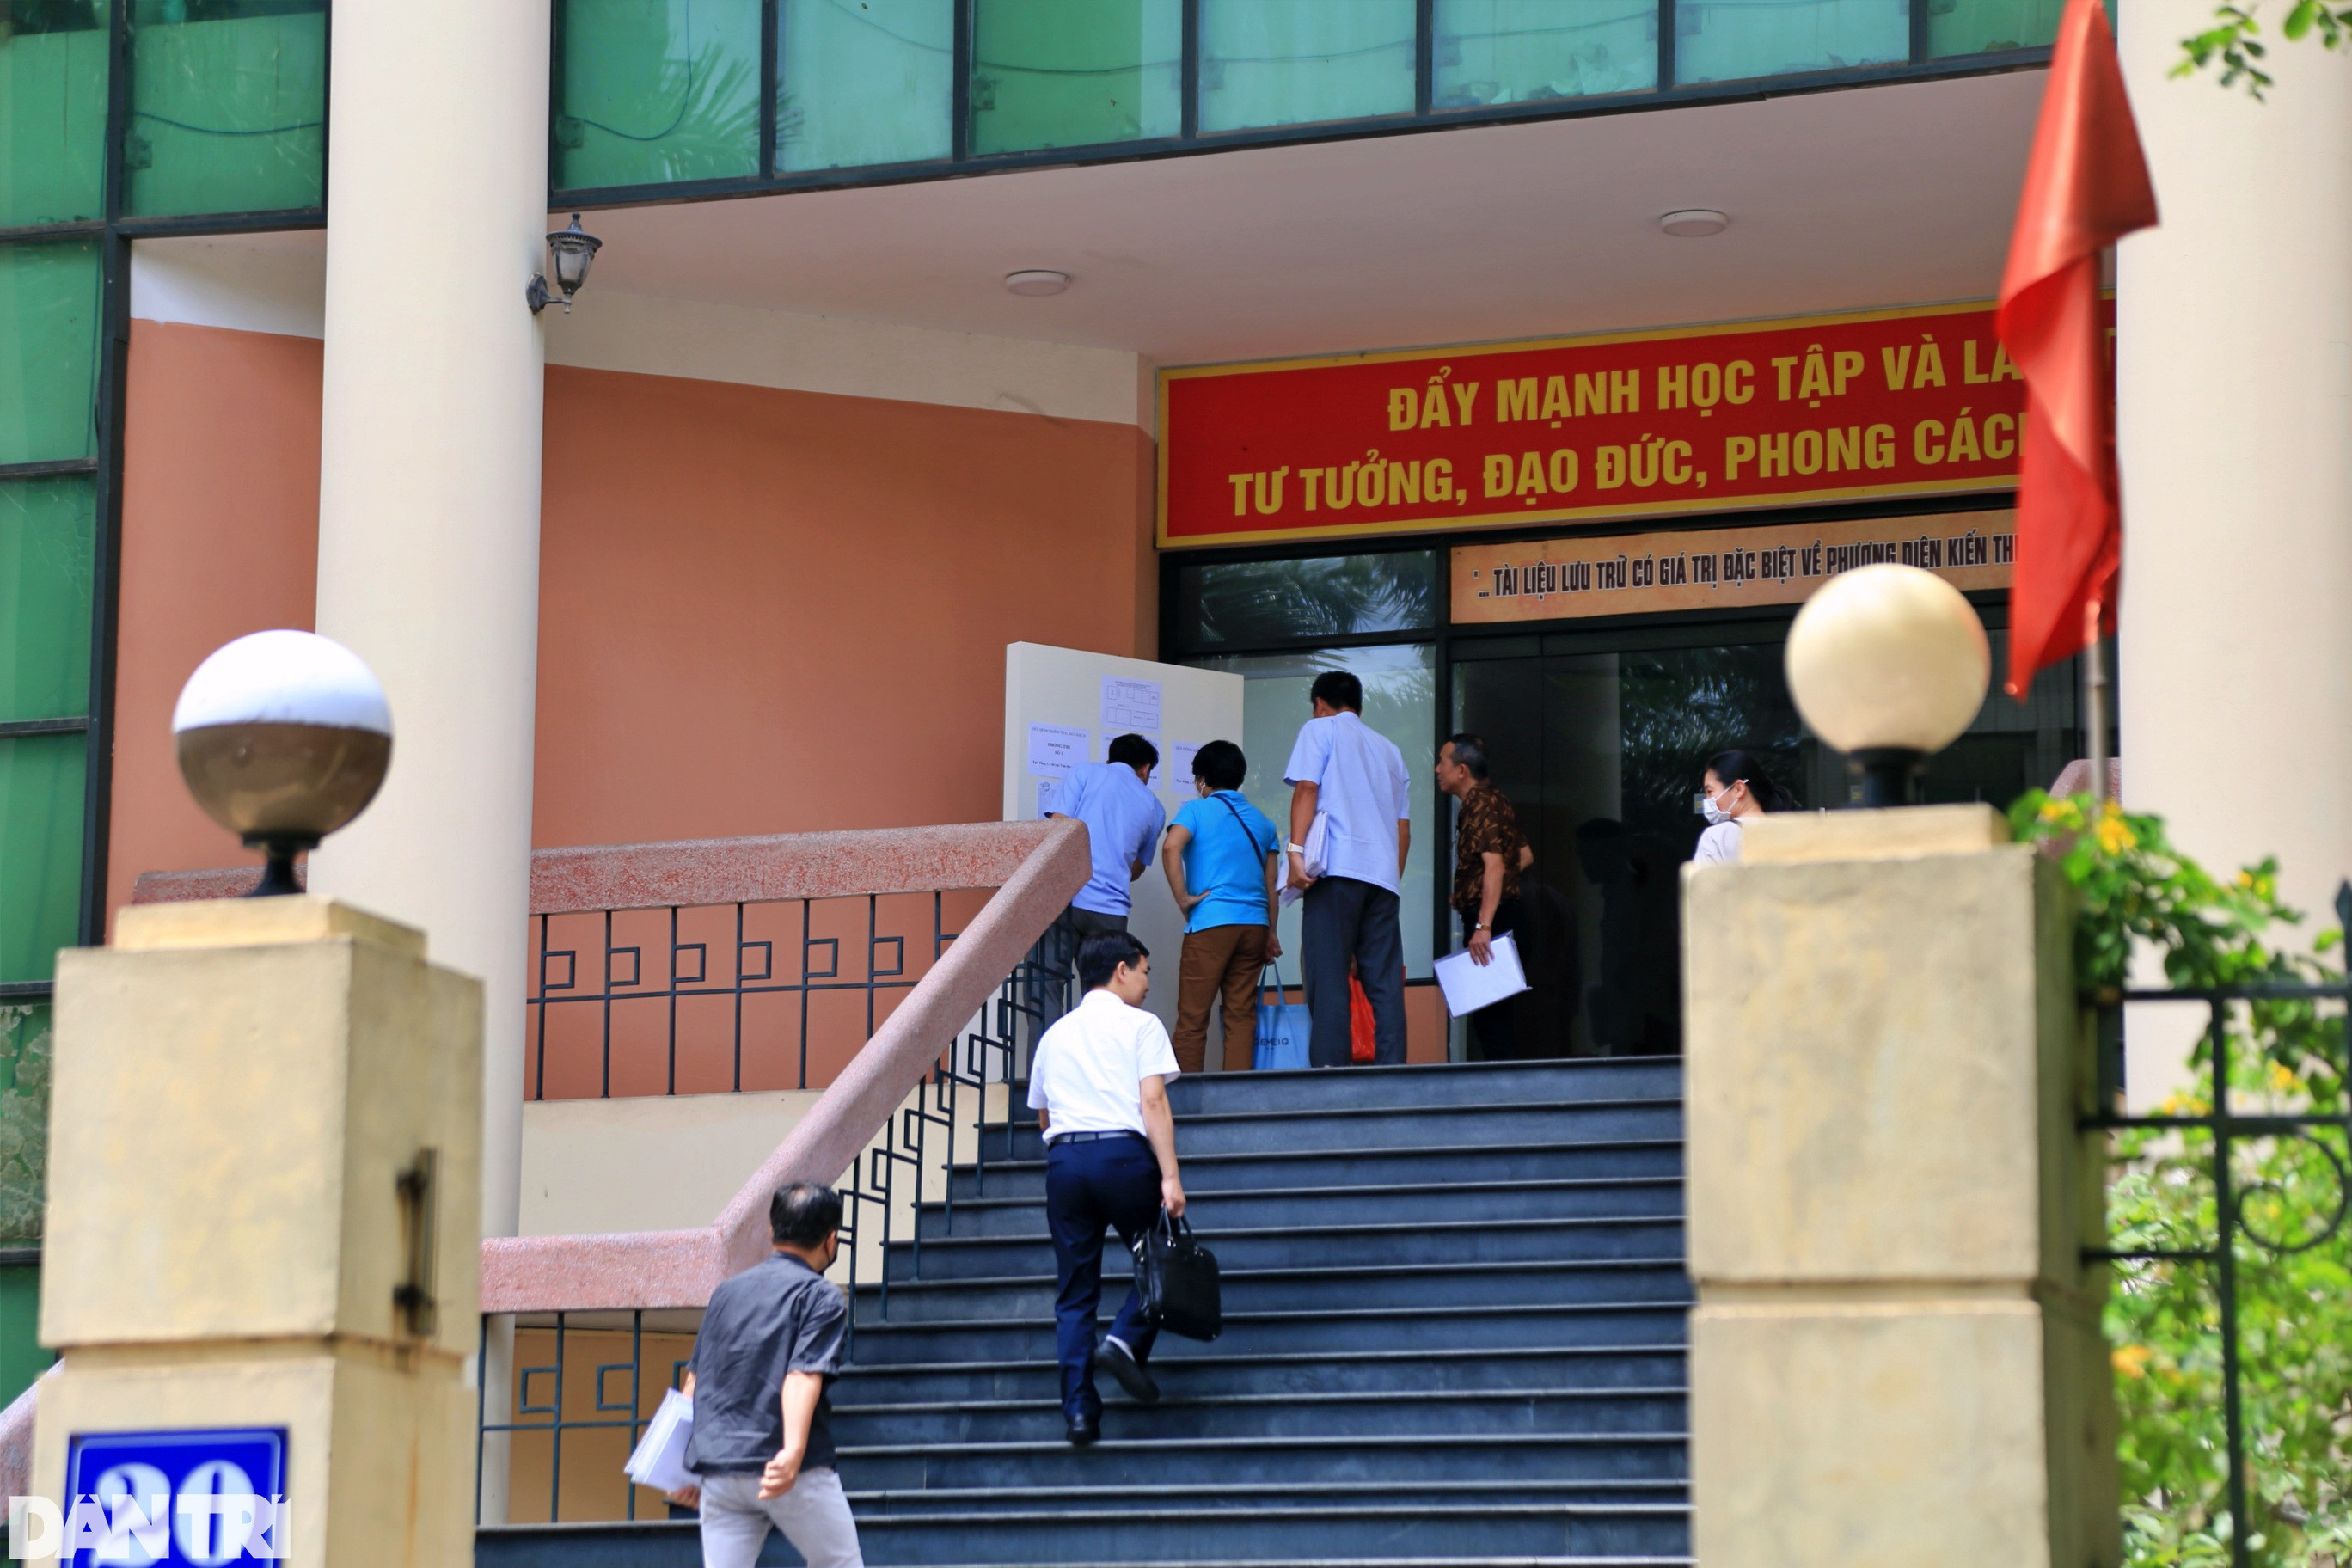 84 cán bộ, công chức ở Hà Nội phải thi sát hạch vì tồn tại tuyển dụng - 2